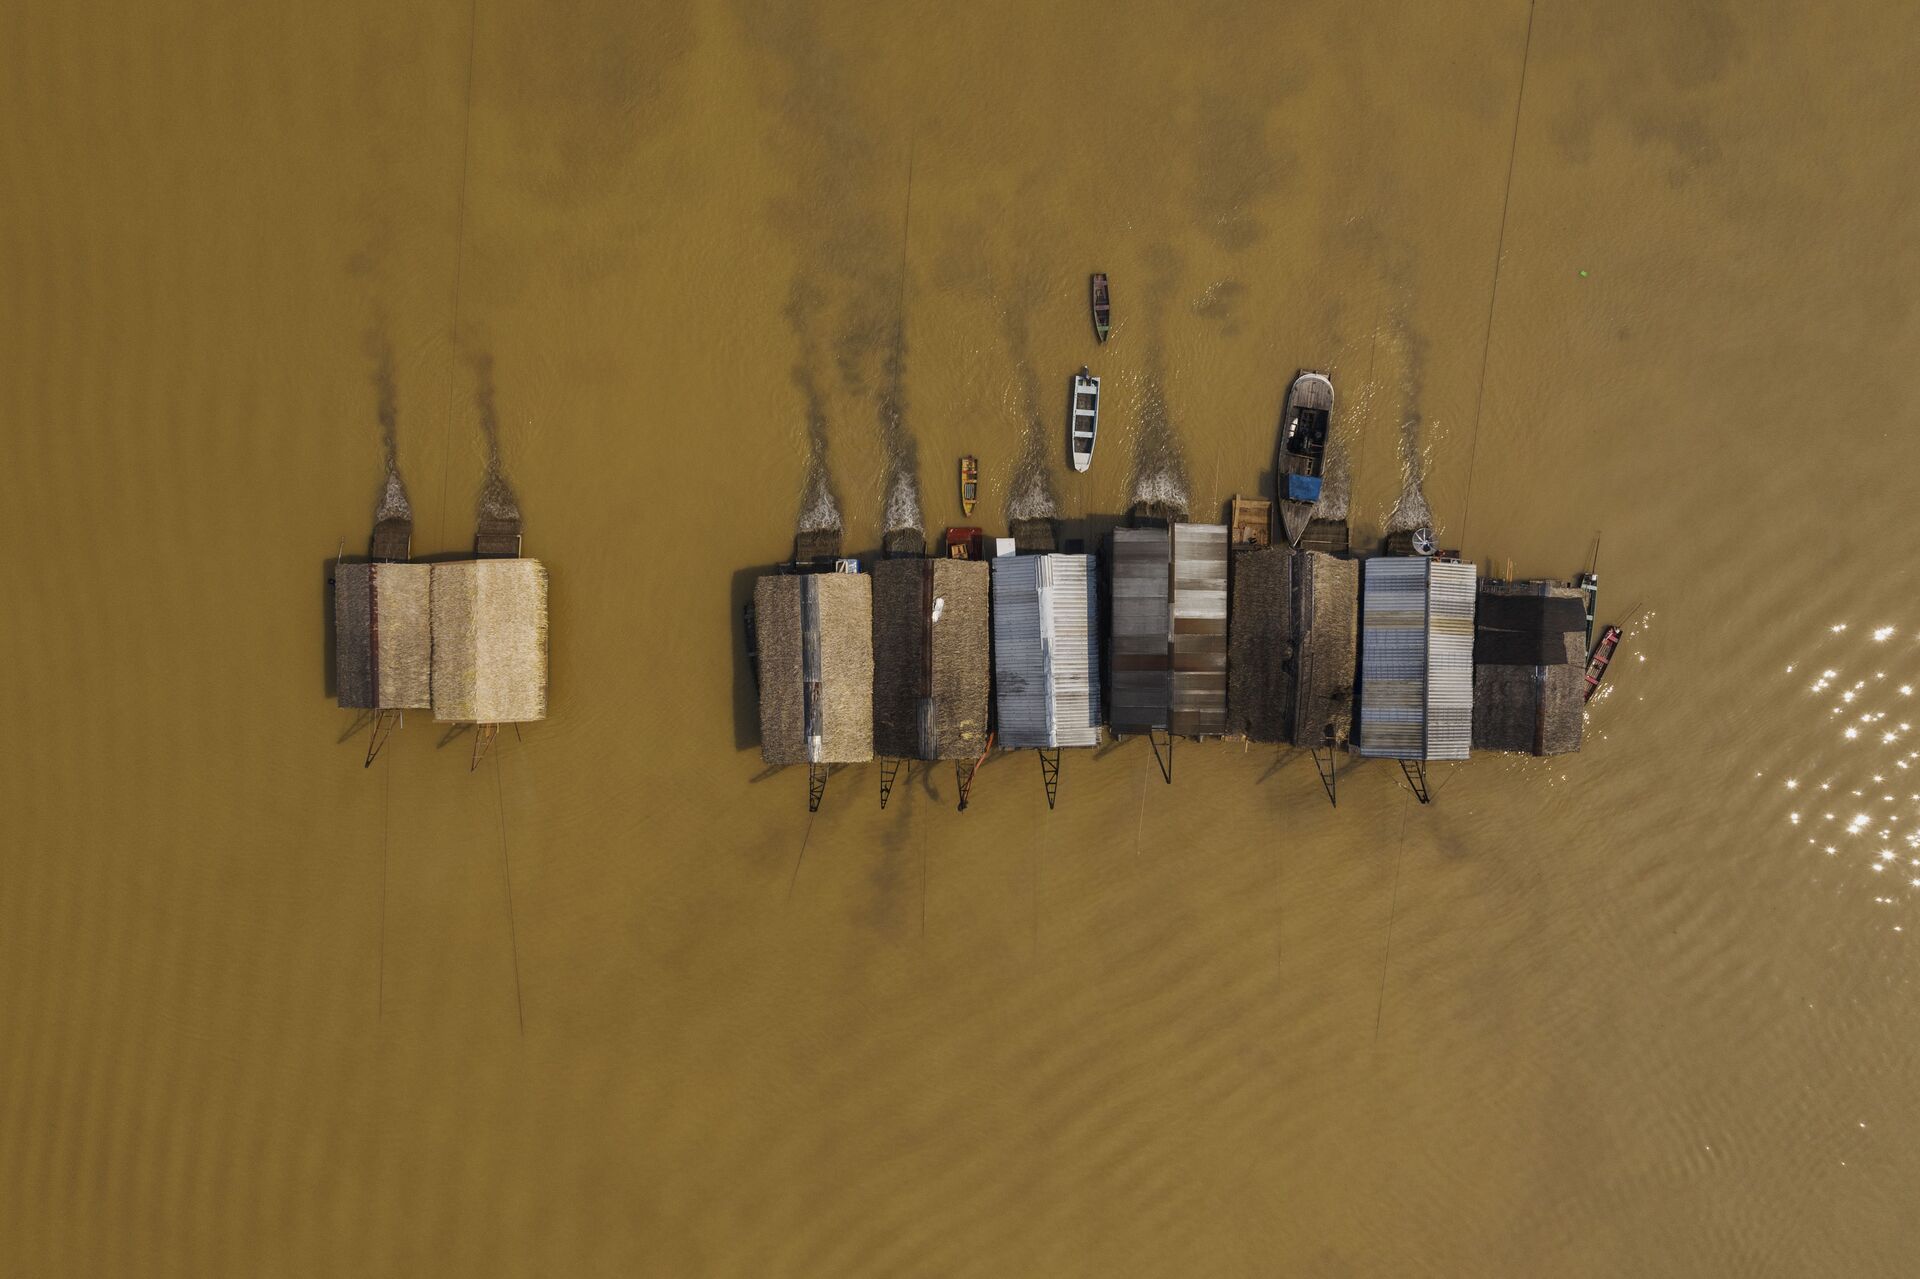 Balsas de garimpo de ouro operam ilegalmente no rio Madeira, em frente a cidade de Humaitá, no sul do Amazonas - Sputnik Brasil, 1920, 09.11.2021